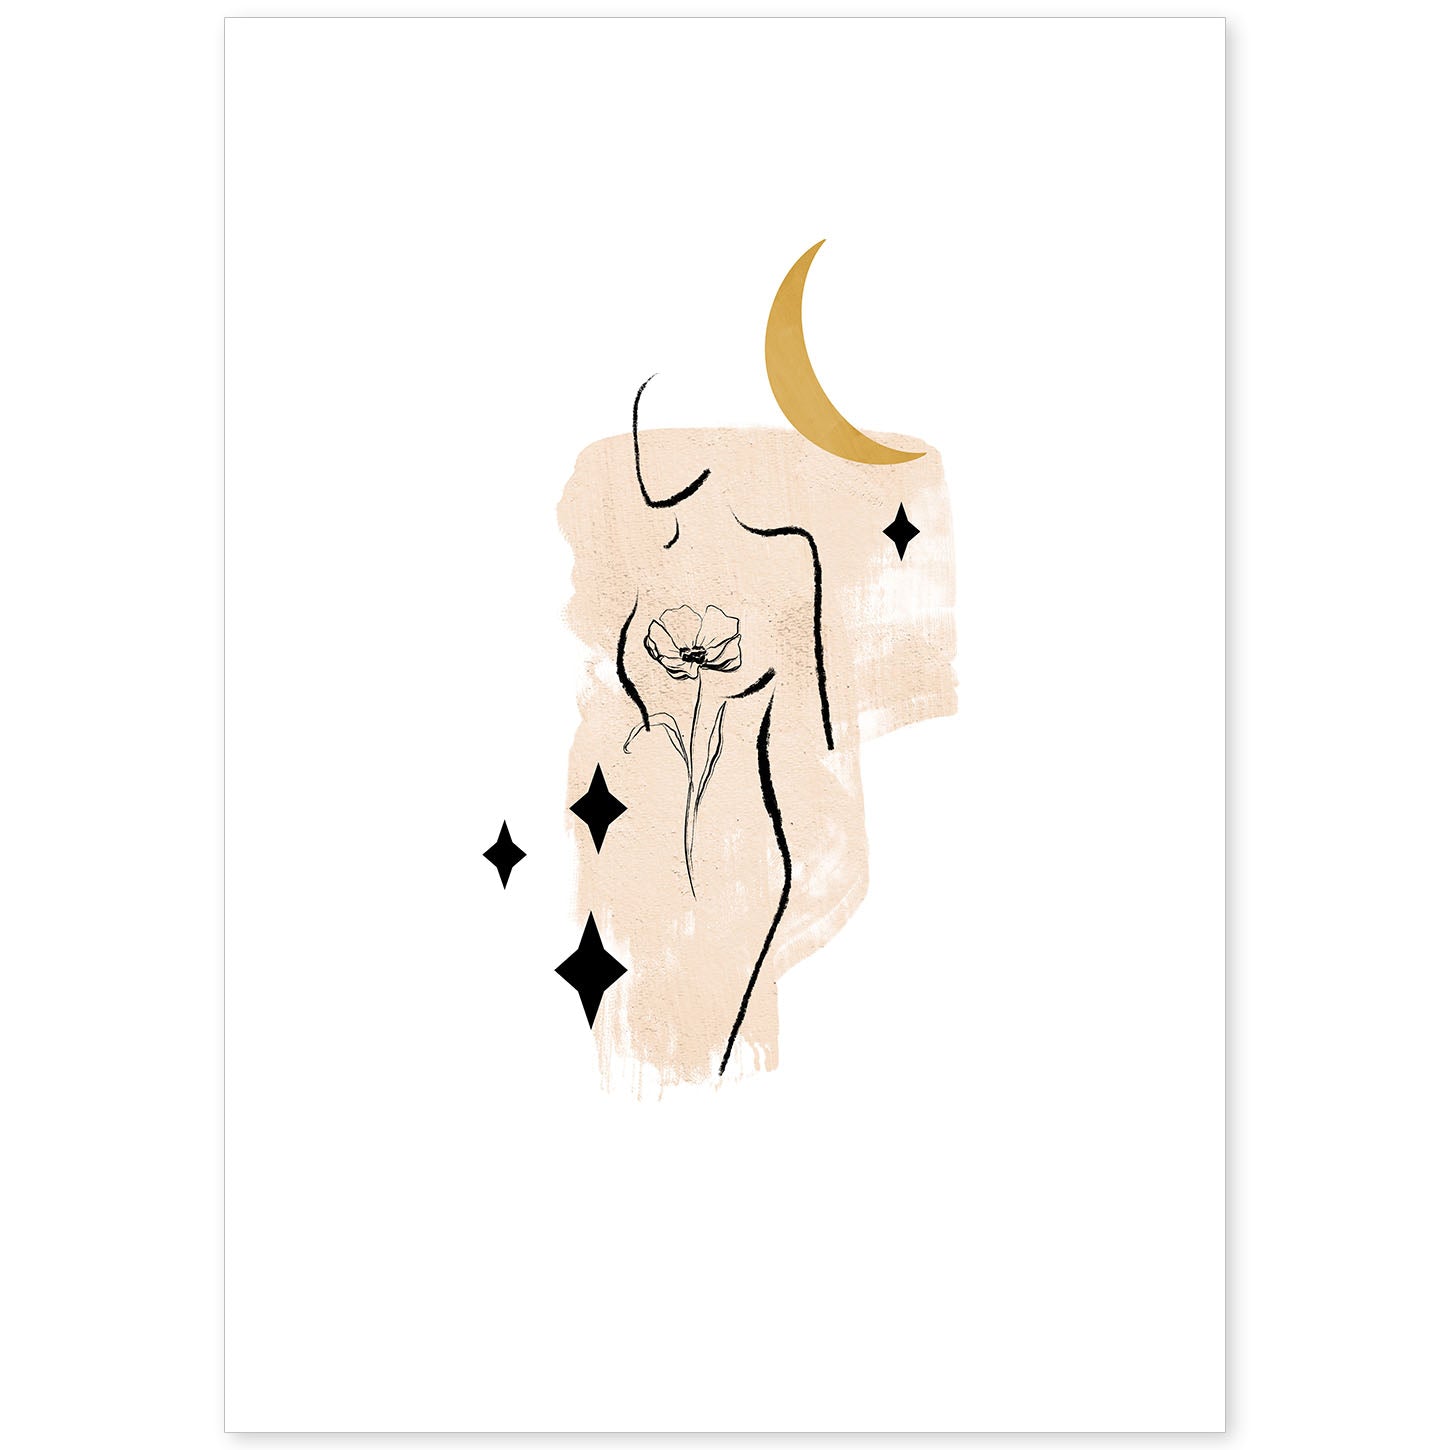 Poster con ilustracion de mujer. Dibujos con formas, caras, cuerpos y gestos de mujeres. 'Mujeres 25'.-Artwork-Nacnic-A4-Sin marco-Nacnic Estudio SL